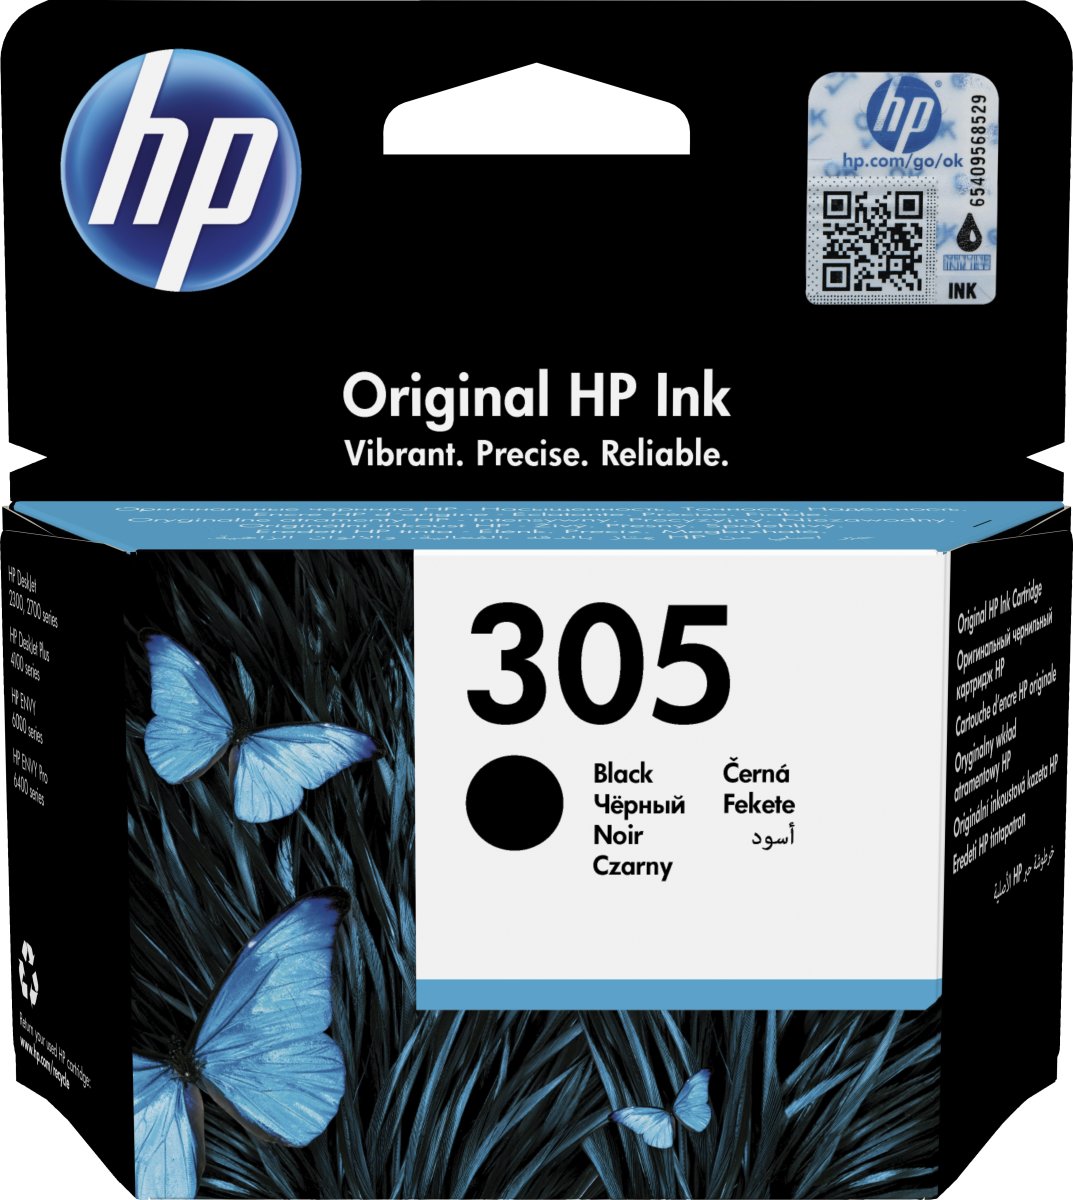 HP 305 bläckpatron | svart | blisterförpackning